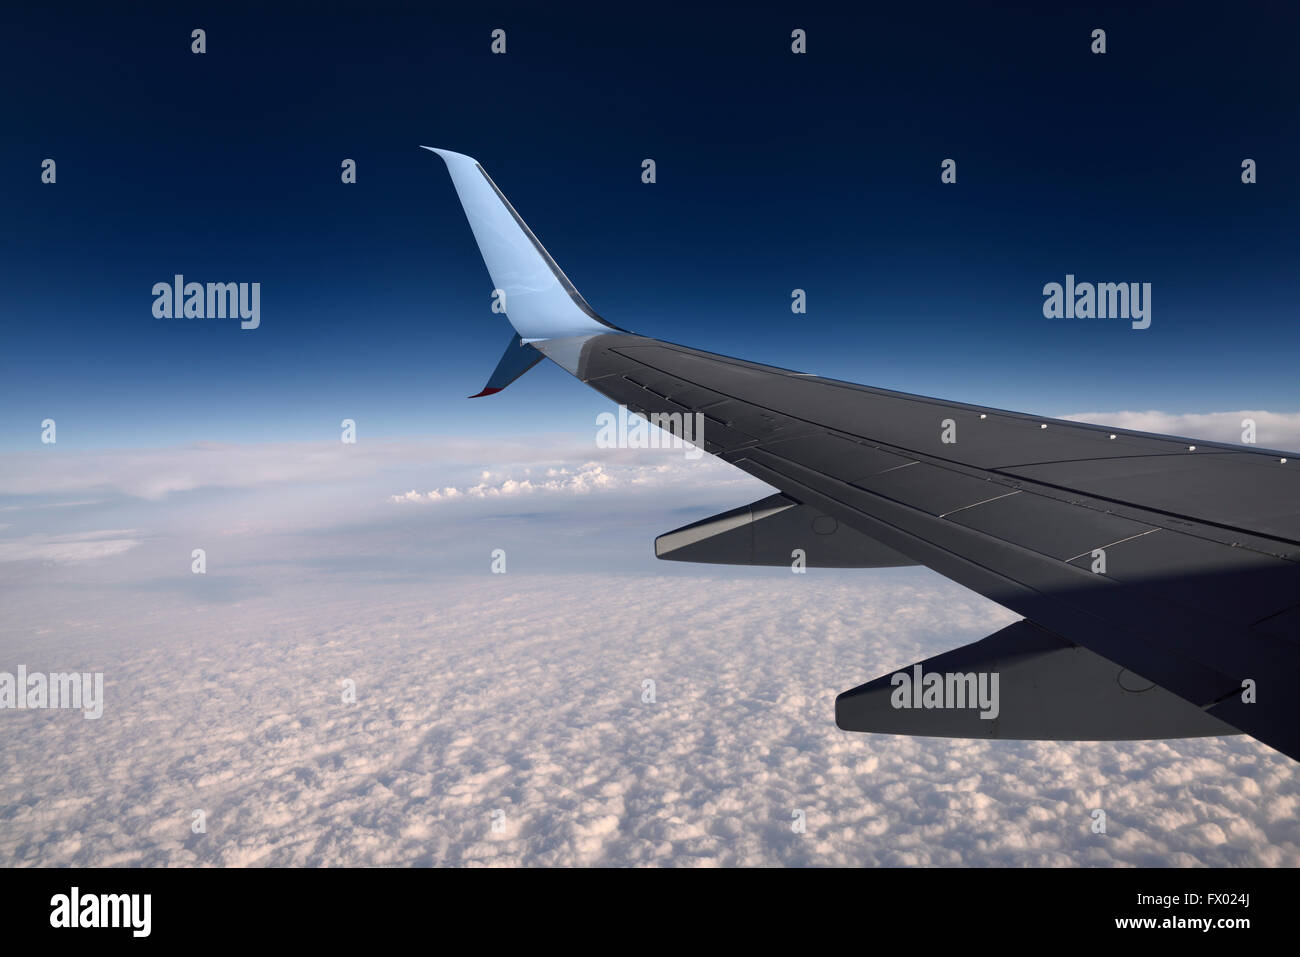 Aile d'avion à réaction volant au-dessus des nuages avec ciel bleu Banque D'Images